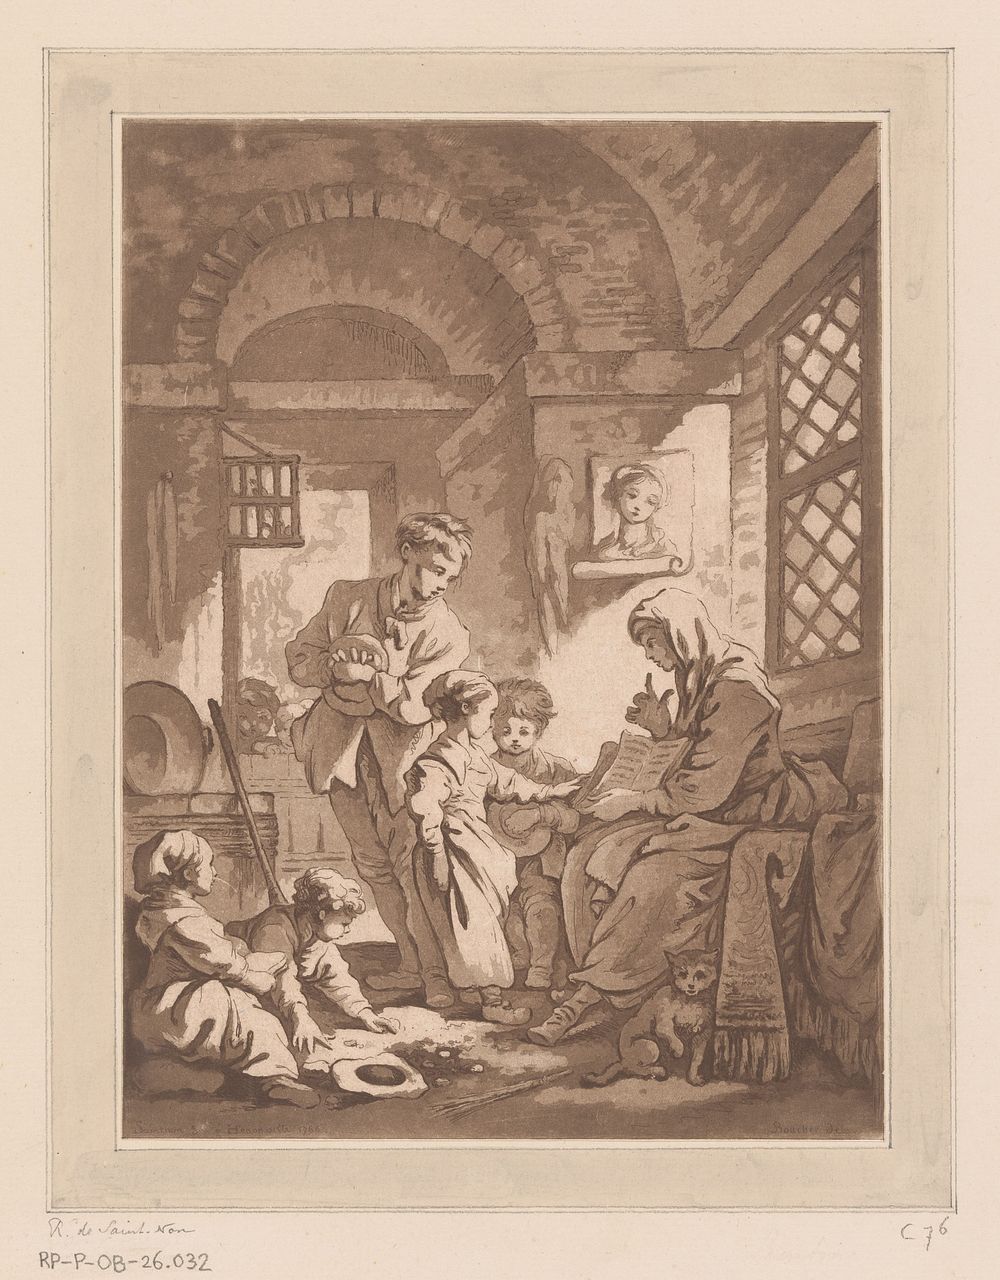 Boereninterieur met vrouw die een boek laat zien aan vijf kinderen (1766) by Richard de Saint Non and François Boucher